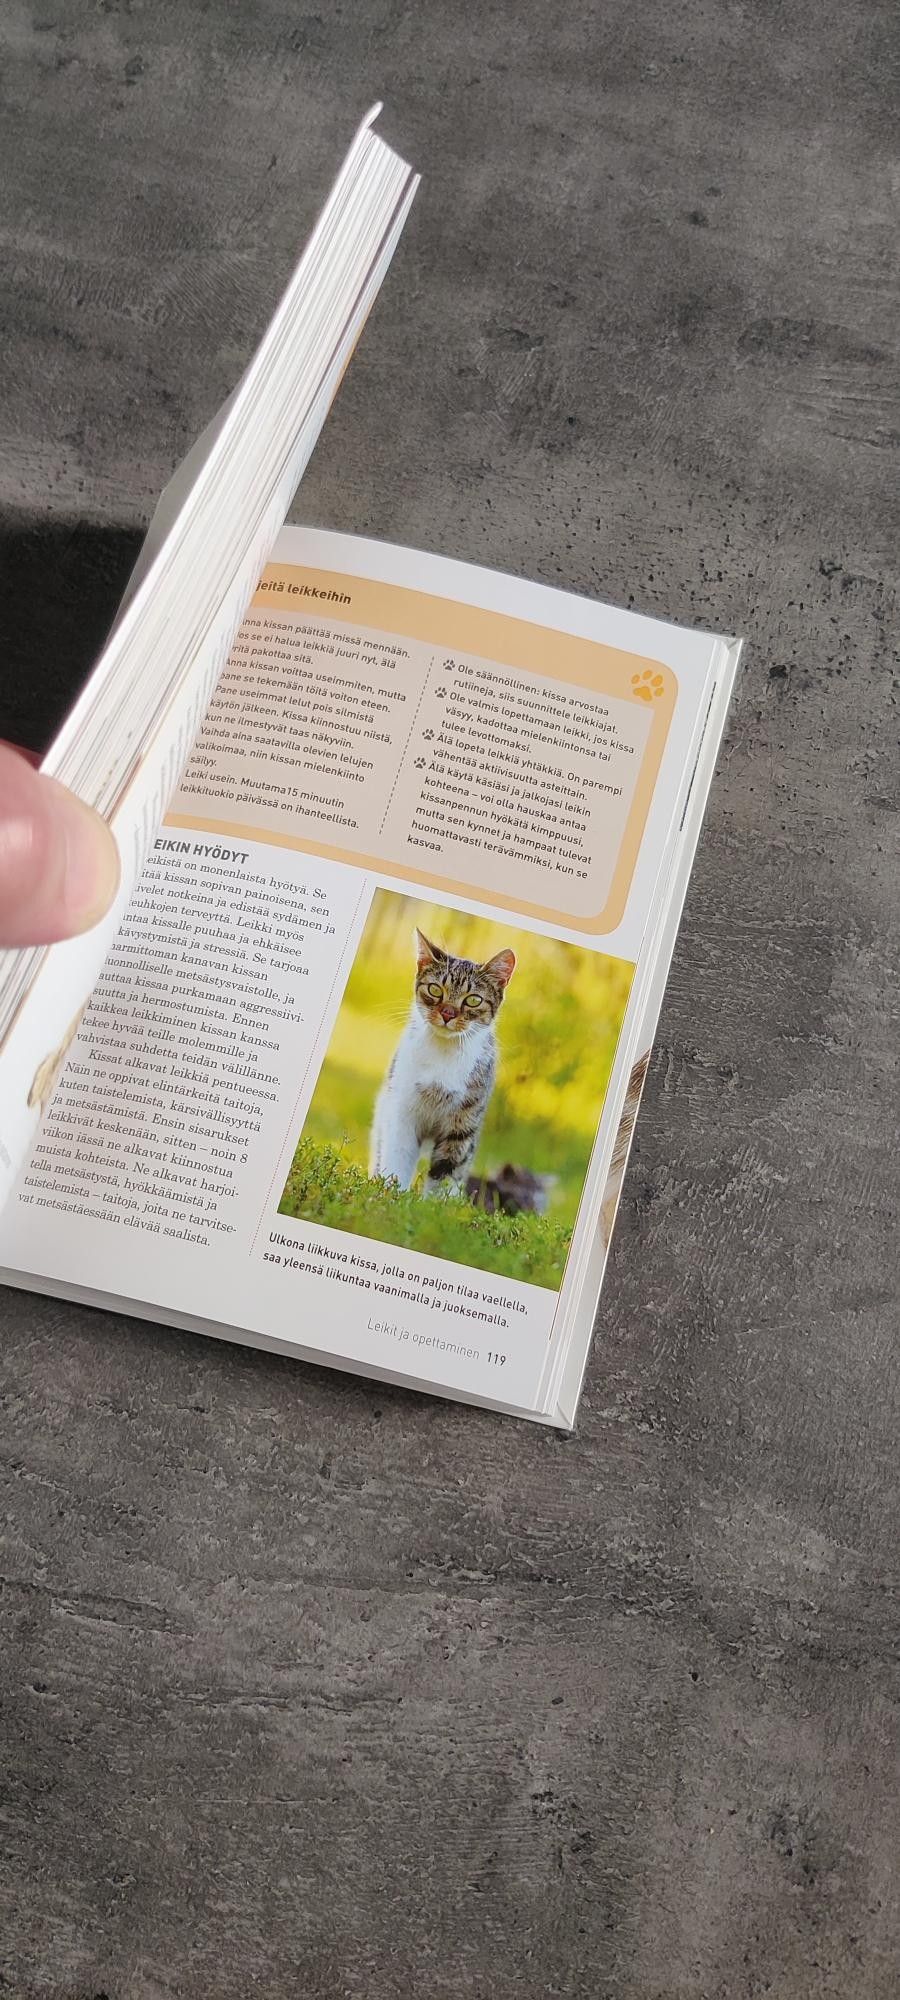 Kissan omistajalle hyvä kirja